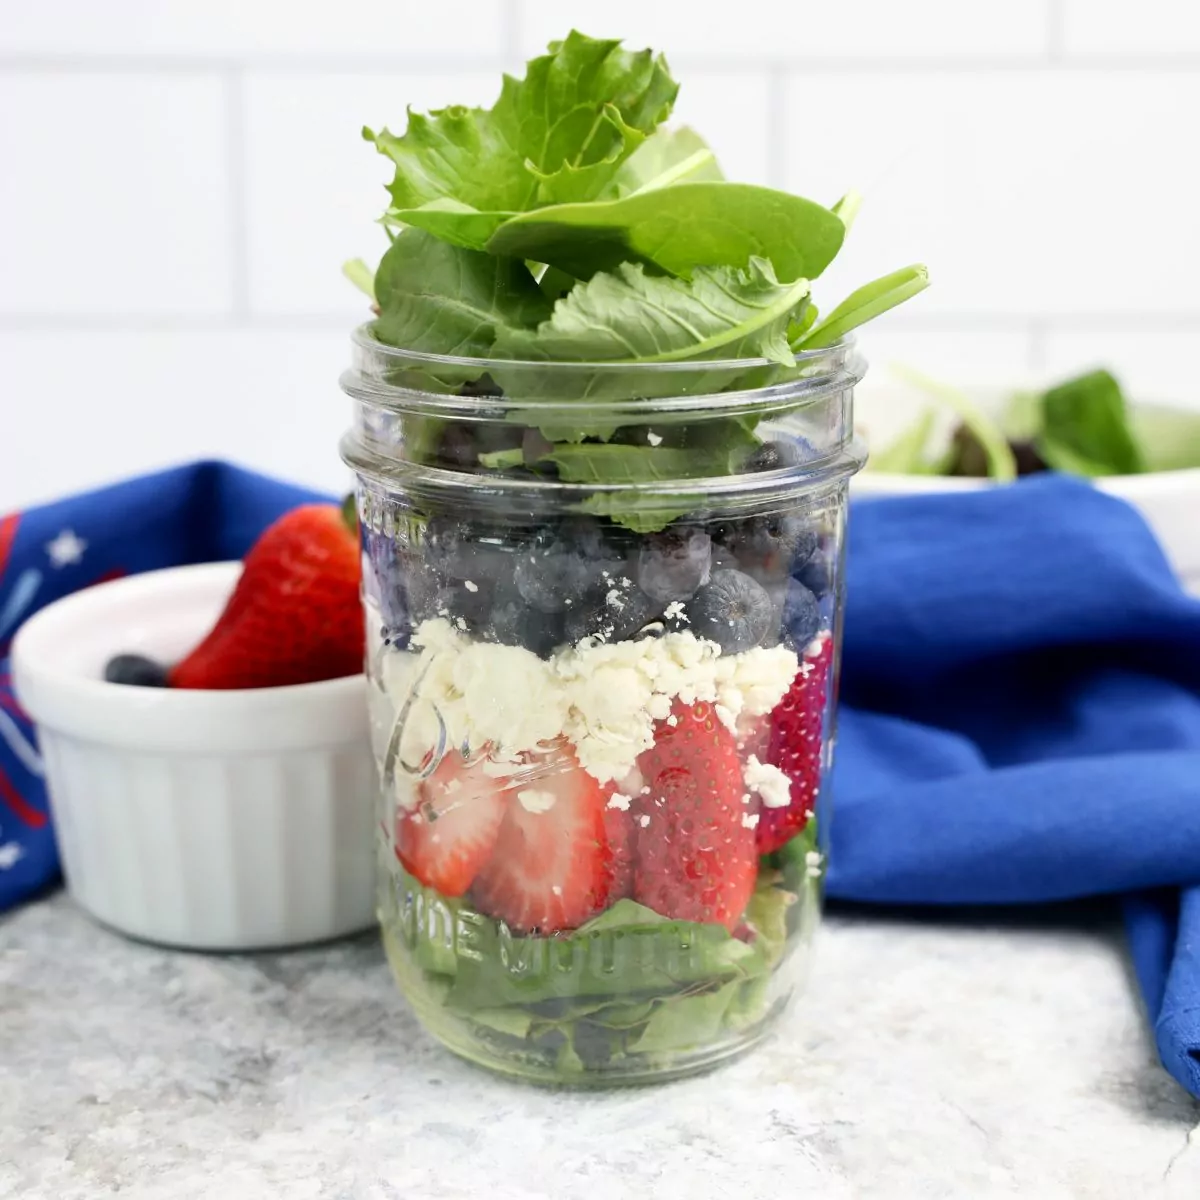 FEATURED Patriotic Salad Recipe in a Mason Jar